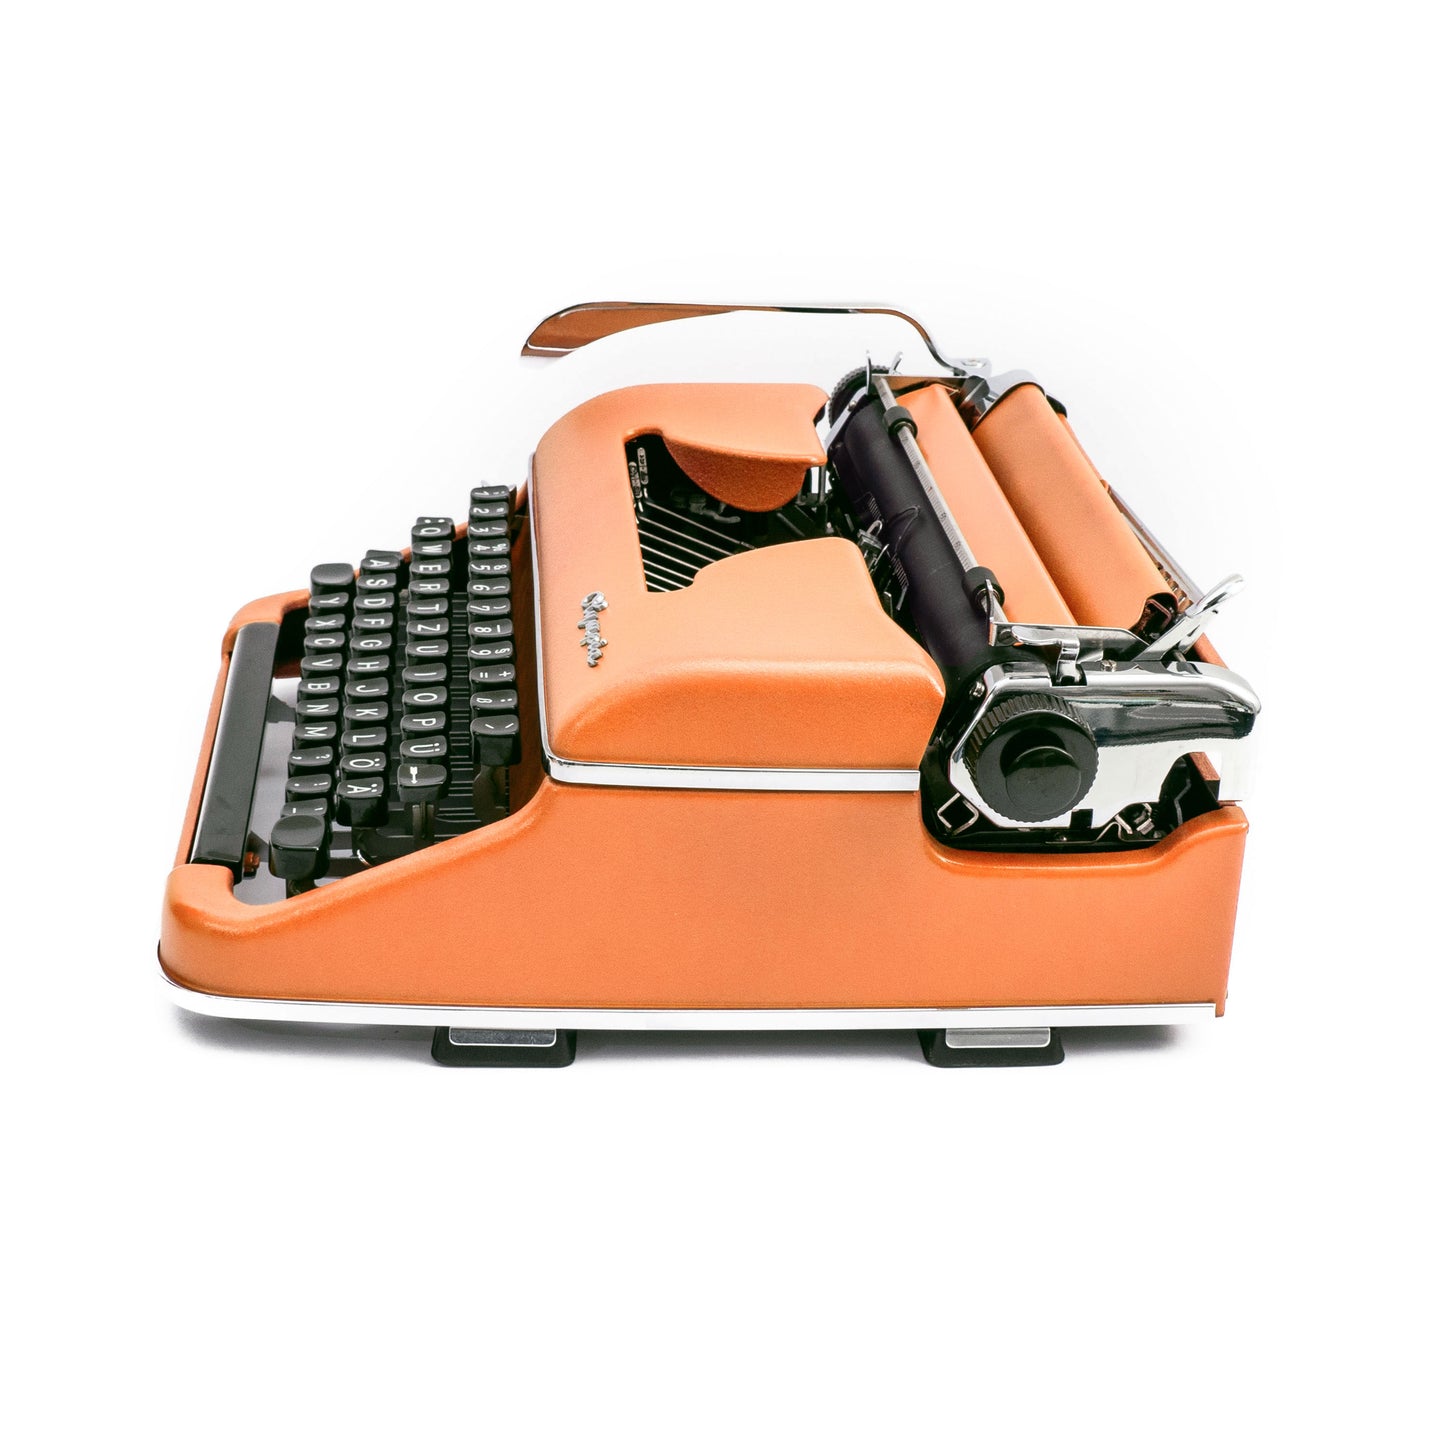 Retro Schreibmaschine Orange